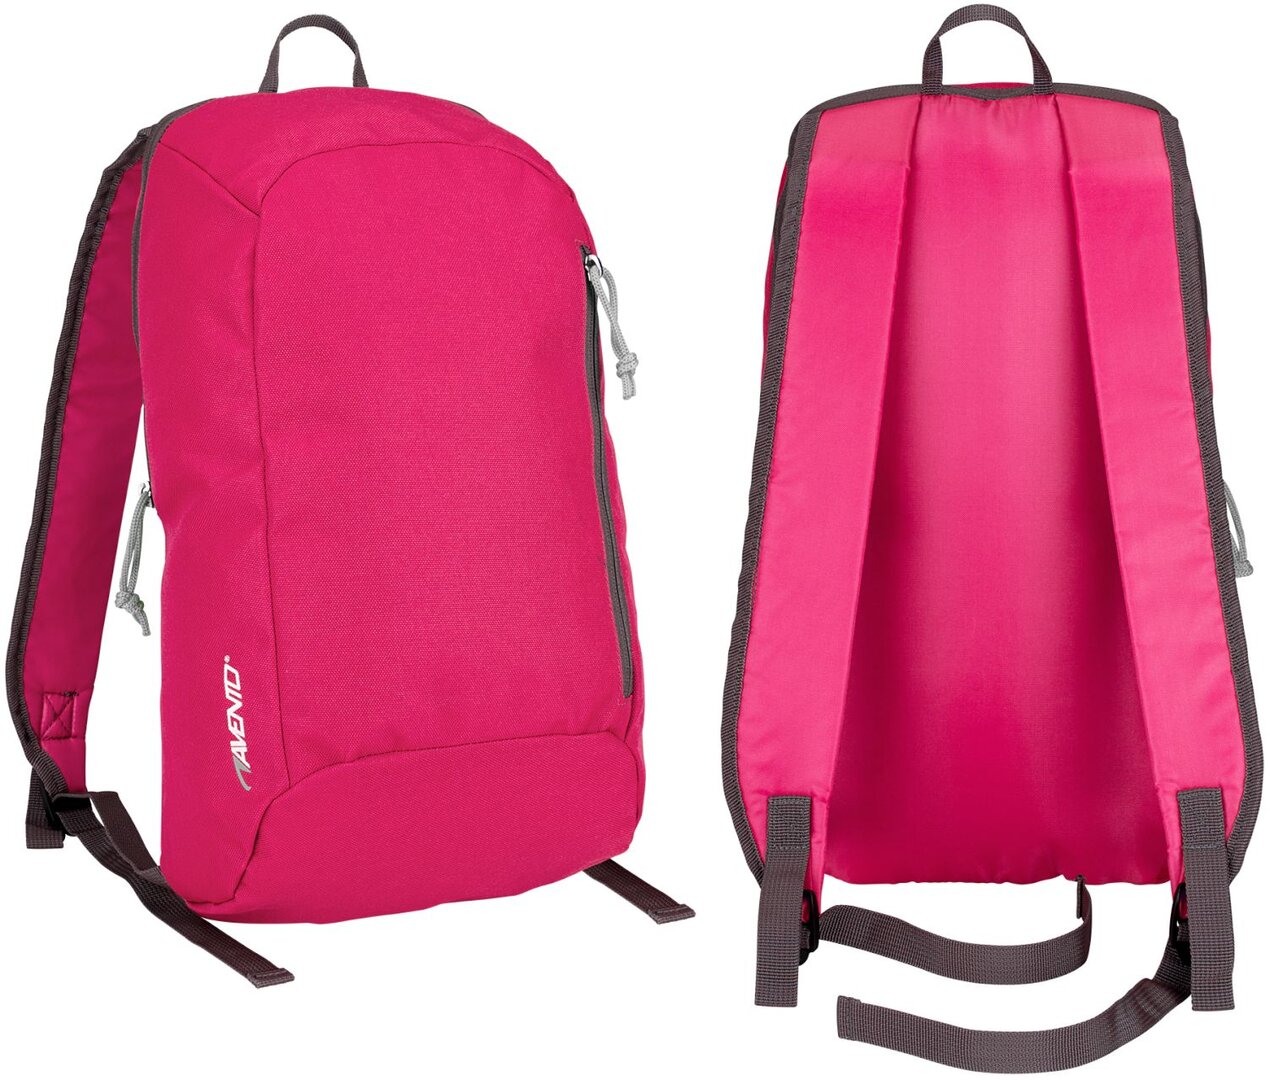 სპორტული ჩანთა AVENTO 21RA FUG, ვარდისფერი